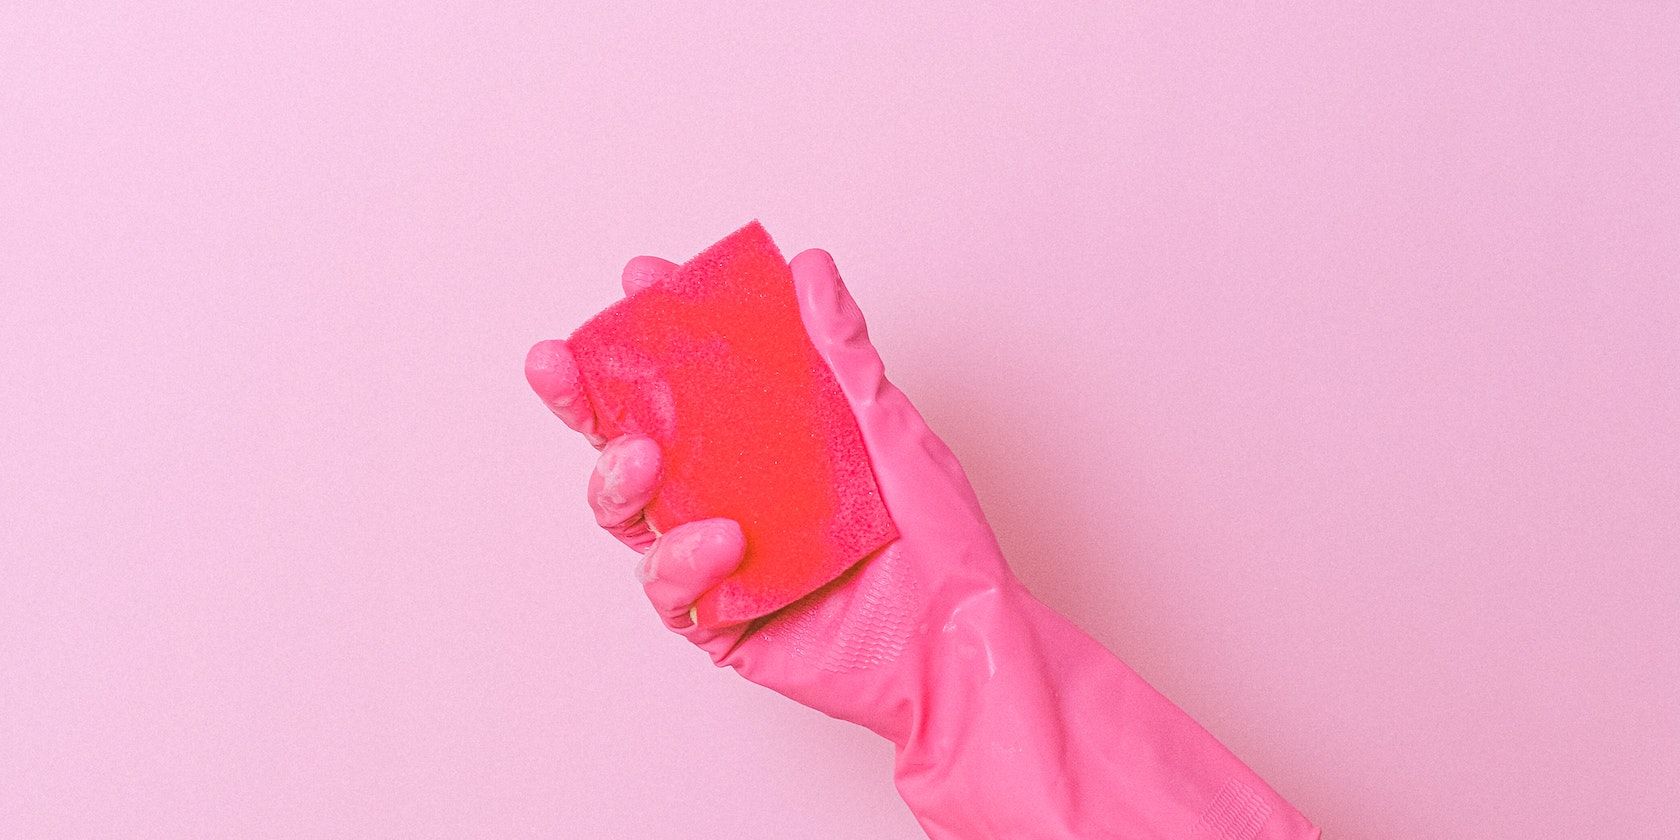 Mani guantate rosa che tengono una spugna rossa